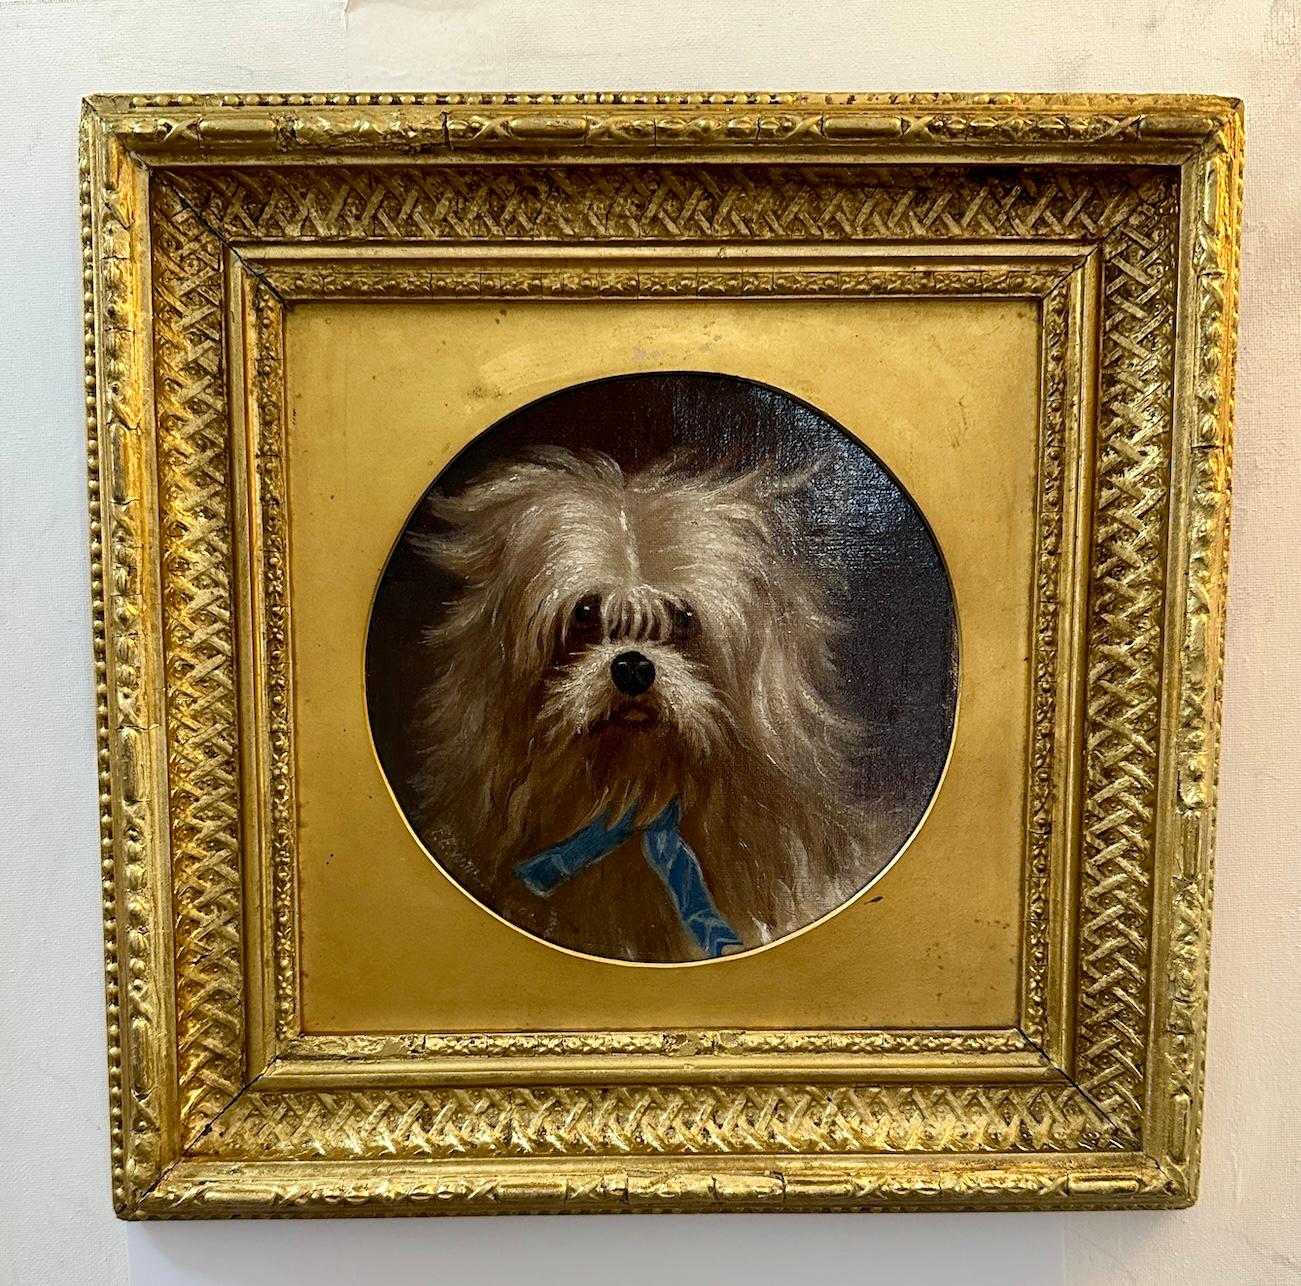 Portrait anglais du 19e siècle représentant une tête de chien, un terrier ou un bichon